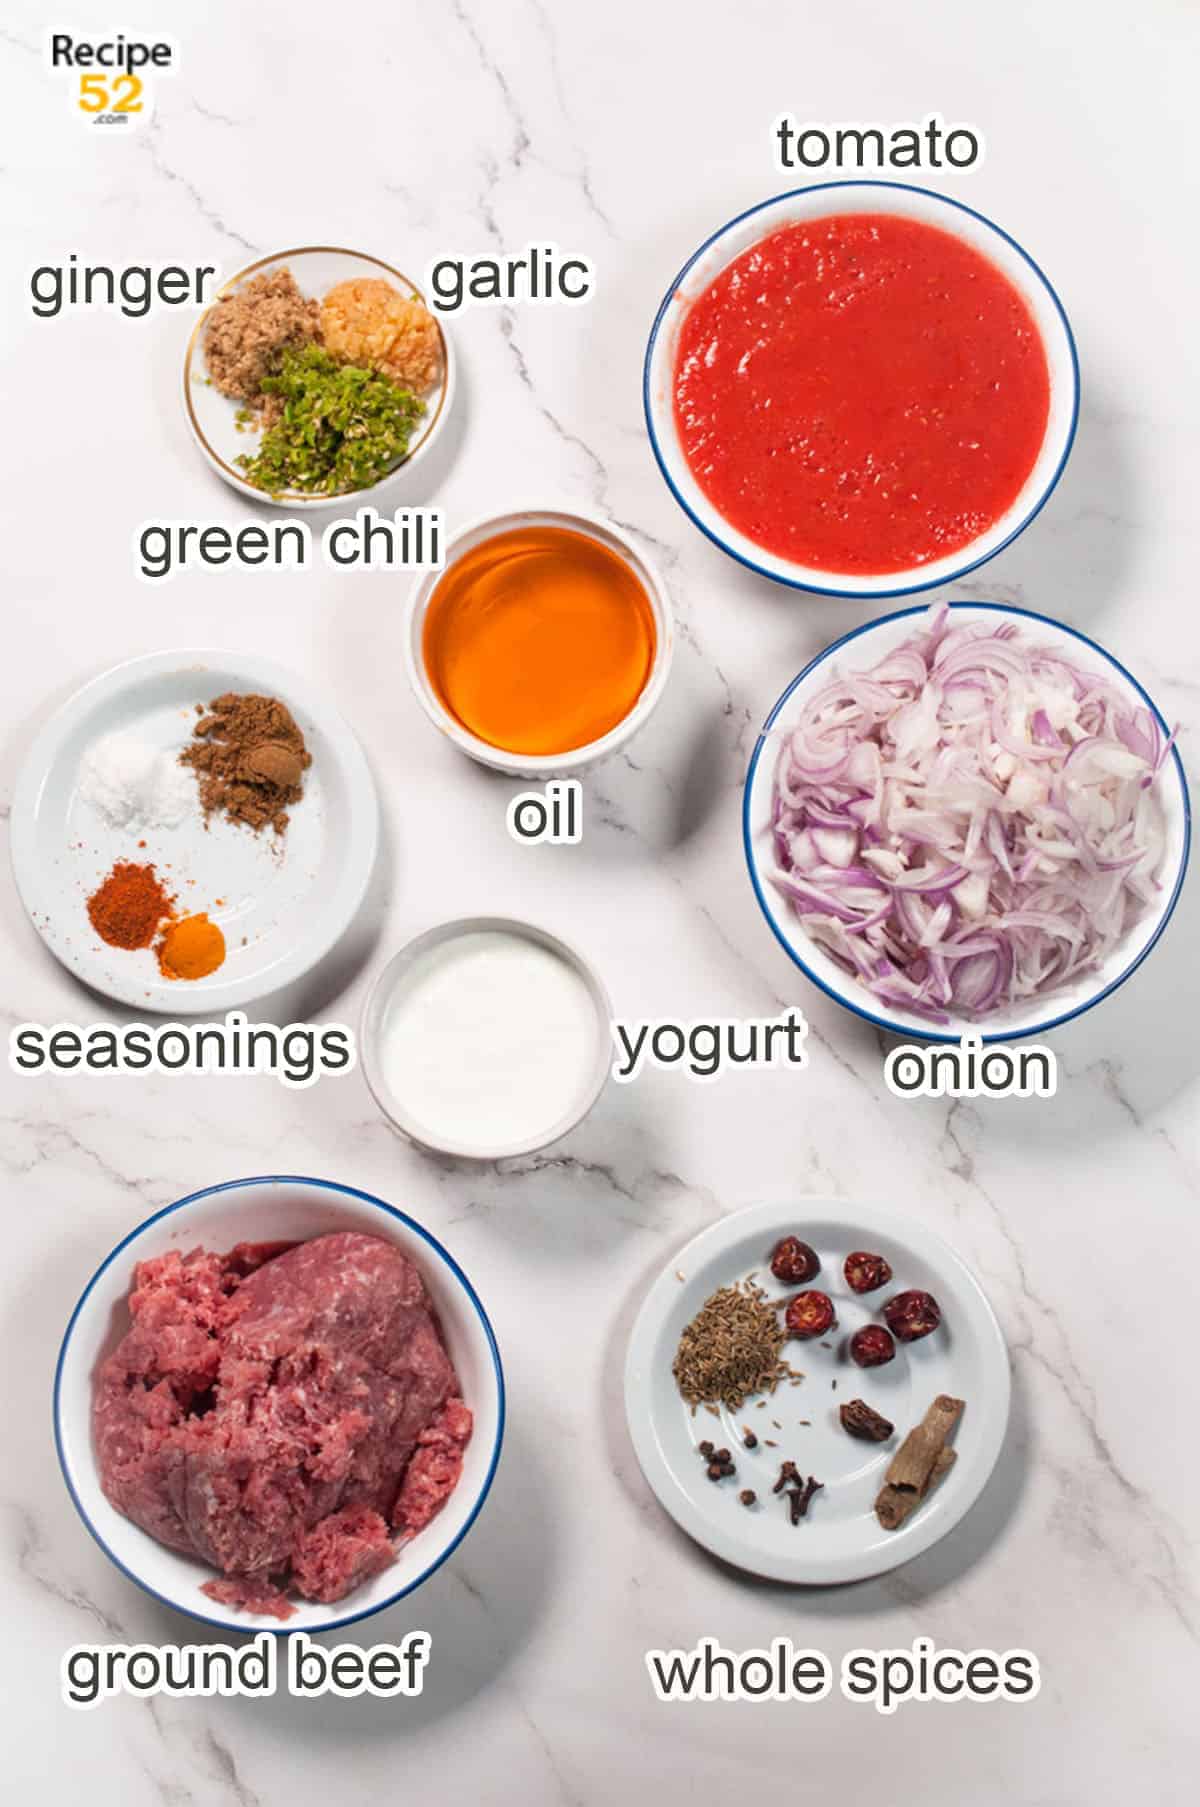 Ingredients displayed of keema.